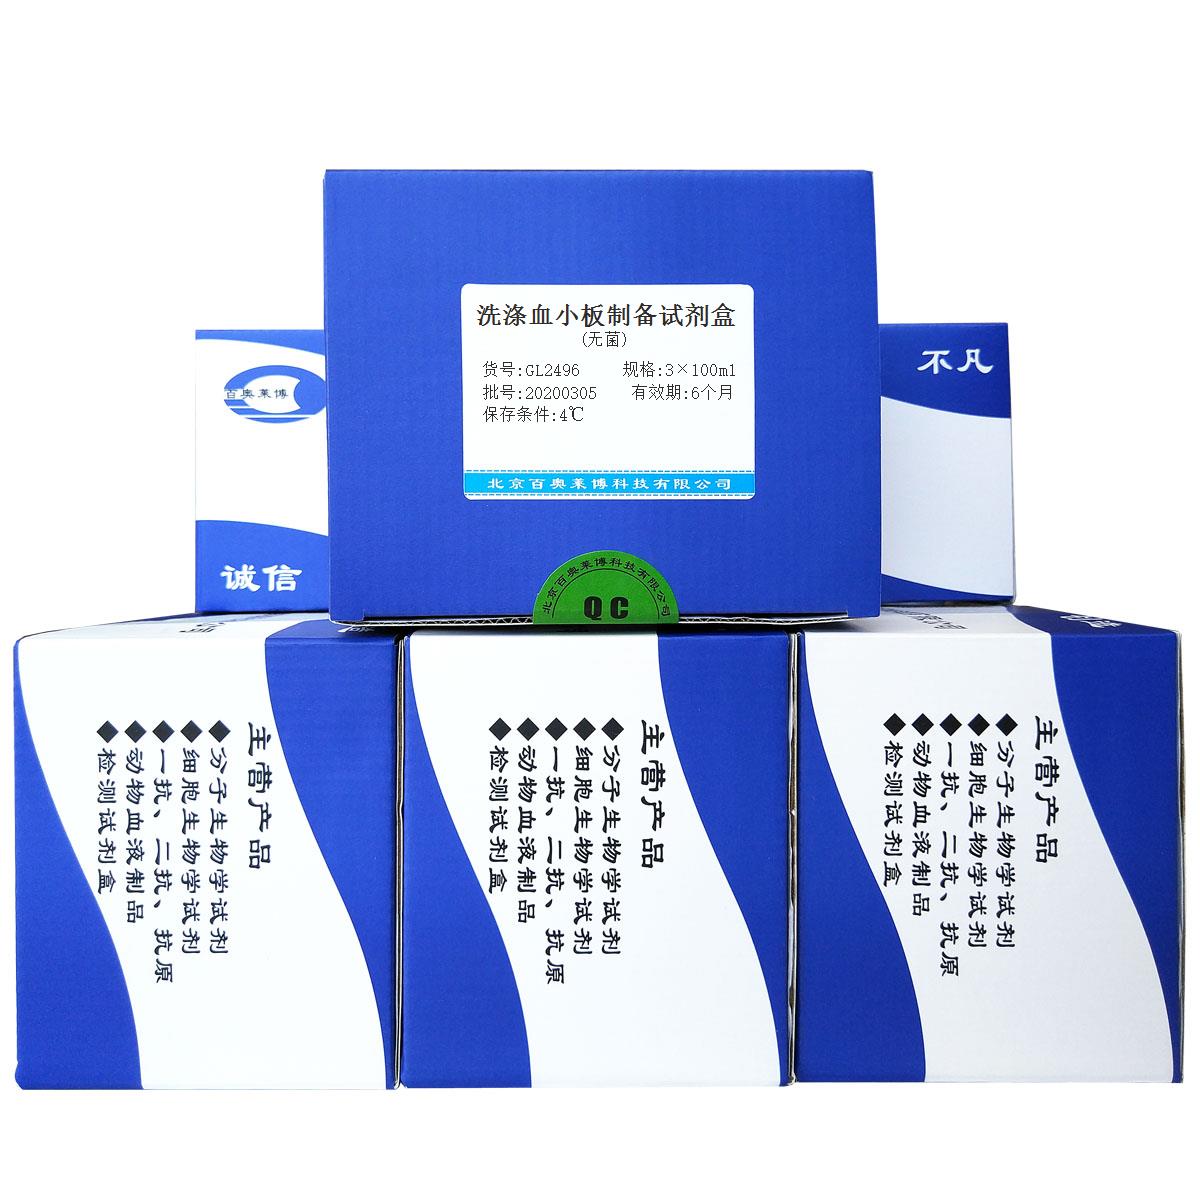 洗涤血小板制备试剂盒(无菌)北京供应商